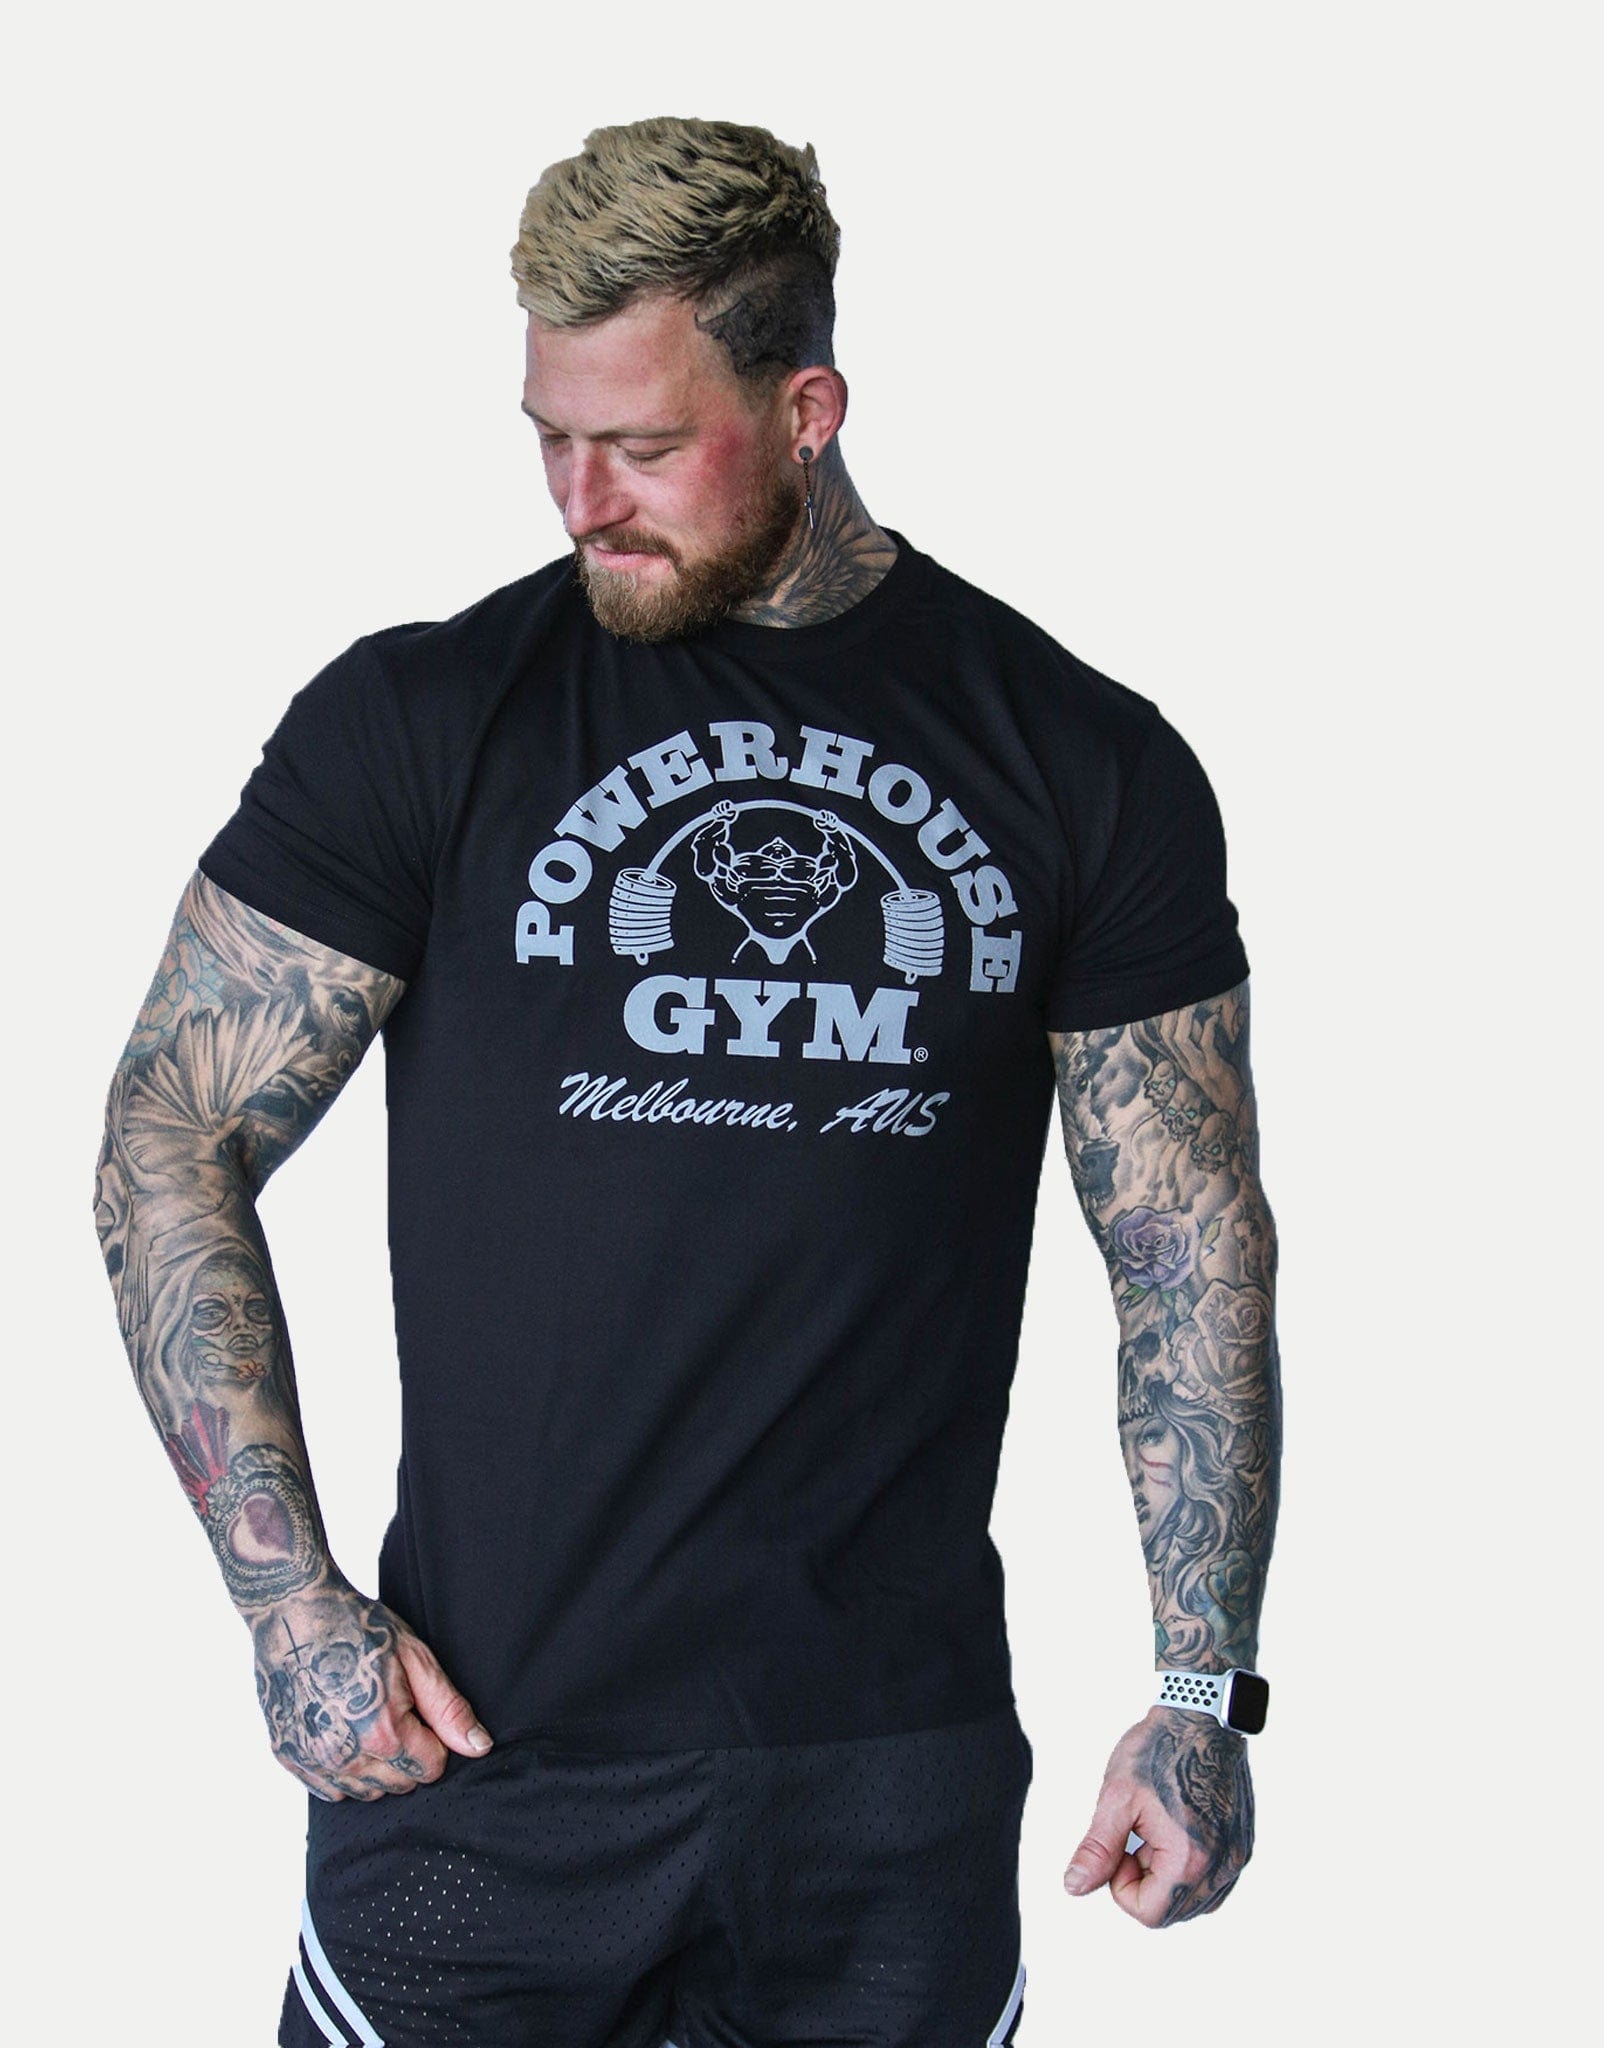 Powerhouse Gym Pro Shop Block T-Shirt Black/Silver